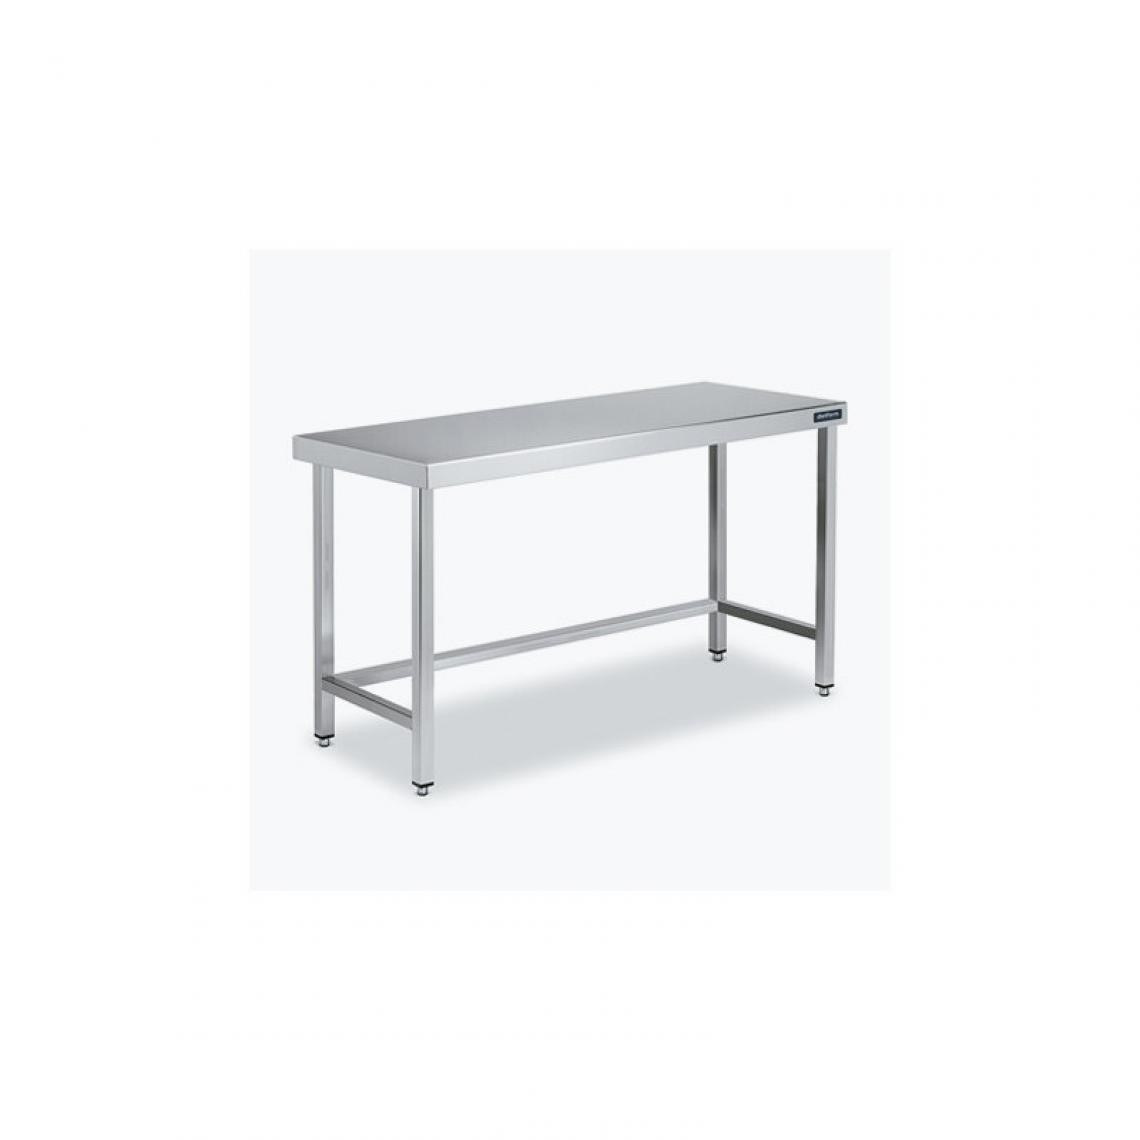 DISTFORM - Table Central 600x550 sans Étagère - Distform - Inox 18/101400x550x850mm - Tables à manger